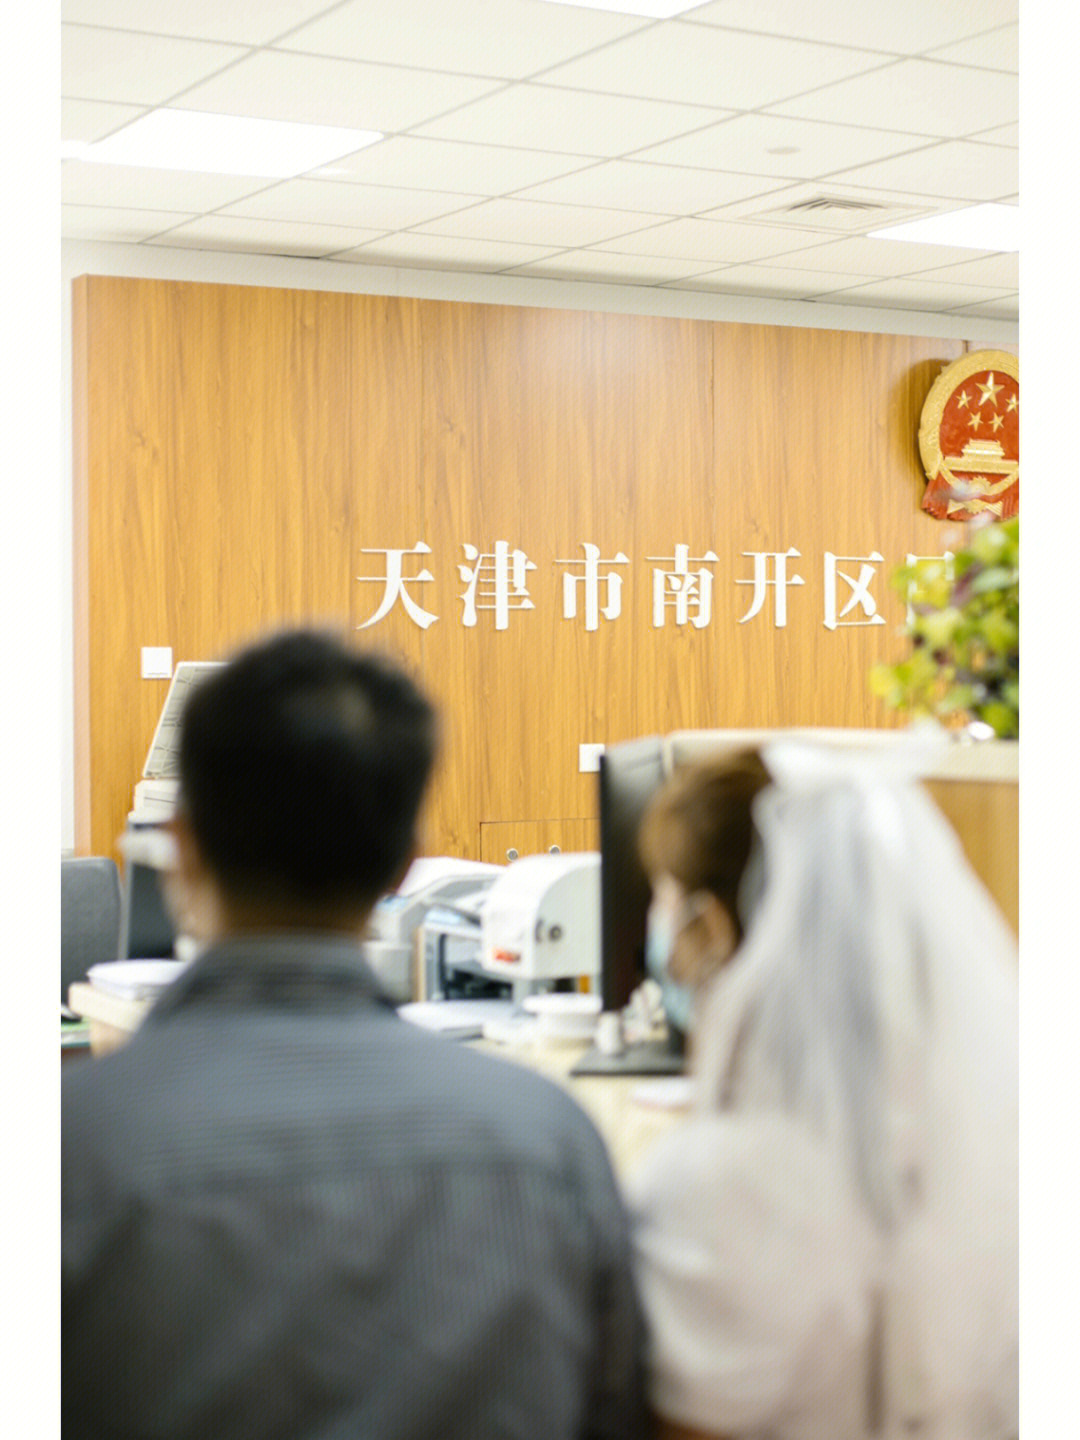 天津领证跟拍天津最美民政局南开民政局